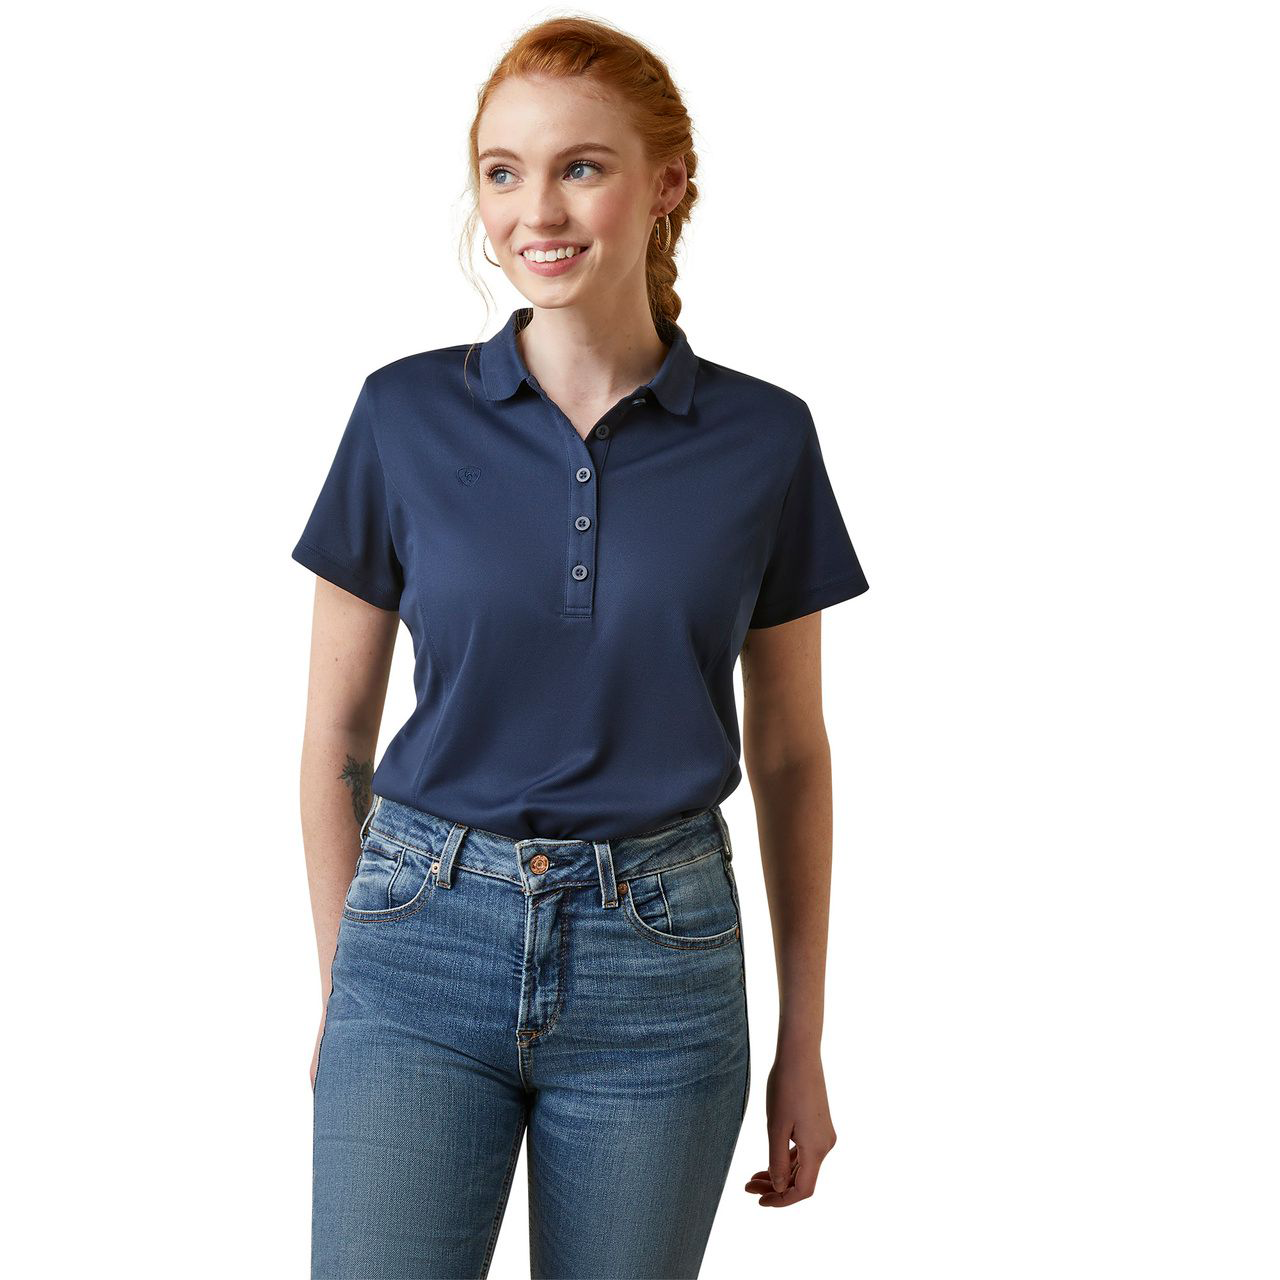 Ariat TEK Short-Sleeve Polo for Ladies - Navy - S